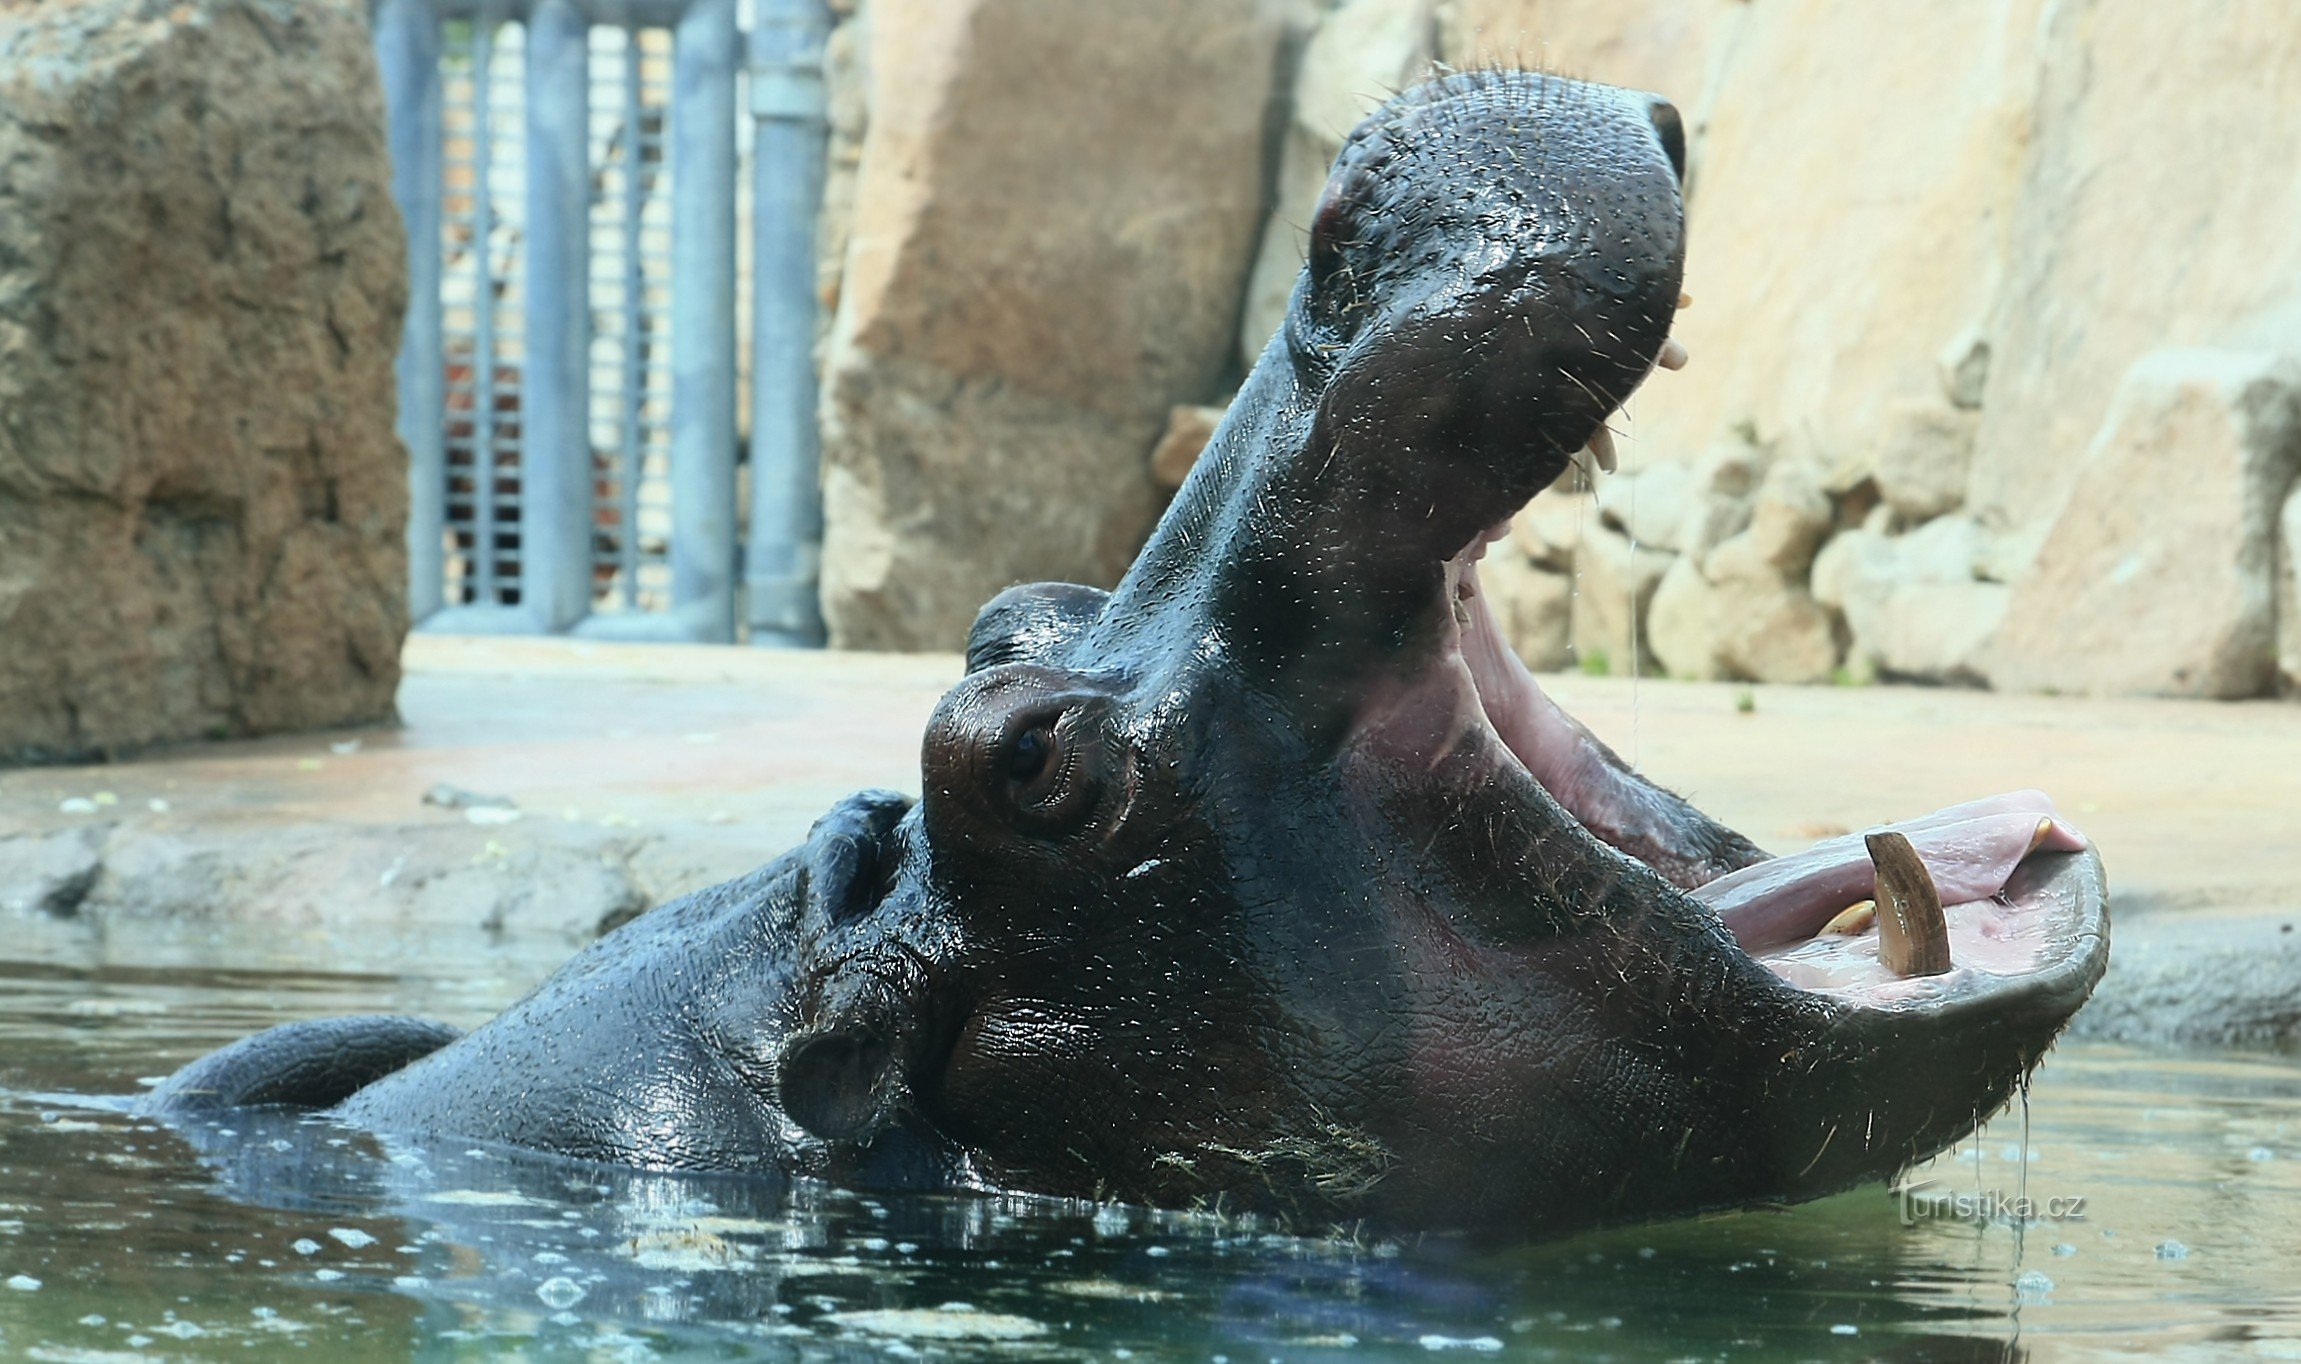 ZOO Praga Troja 2014 - hipopótamo detrás de un vidrio